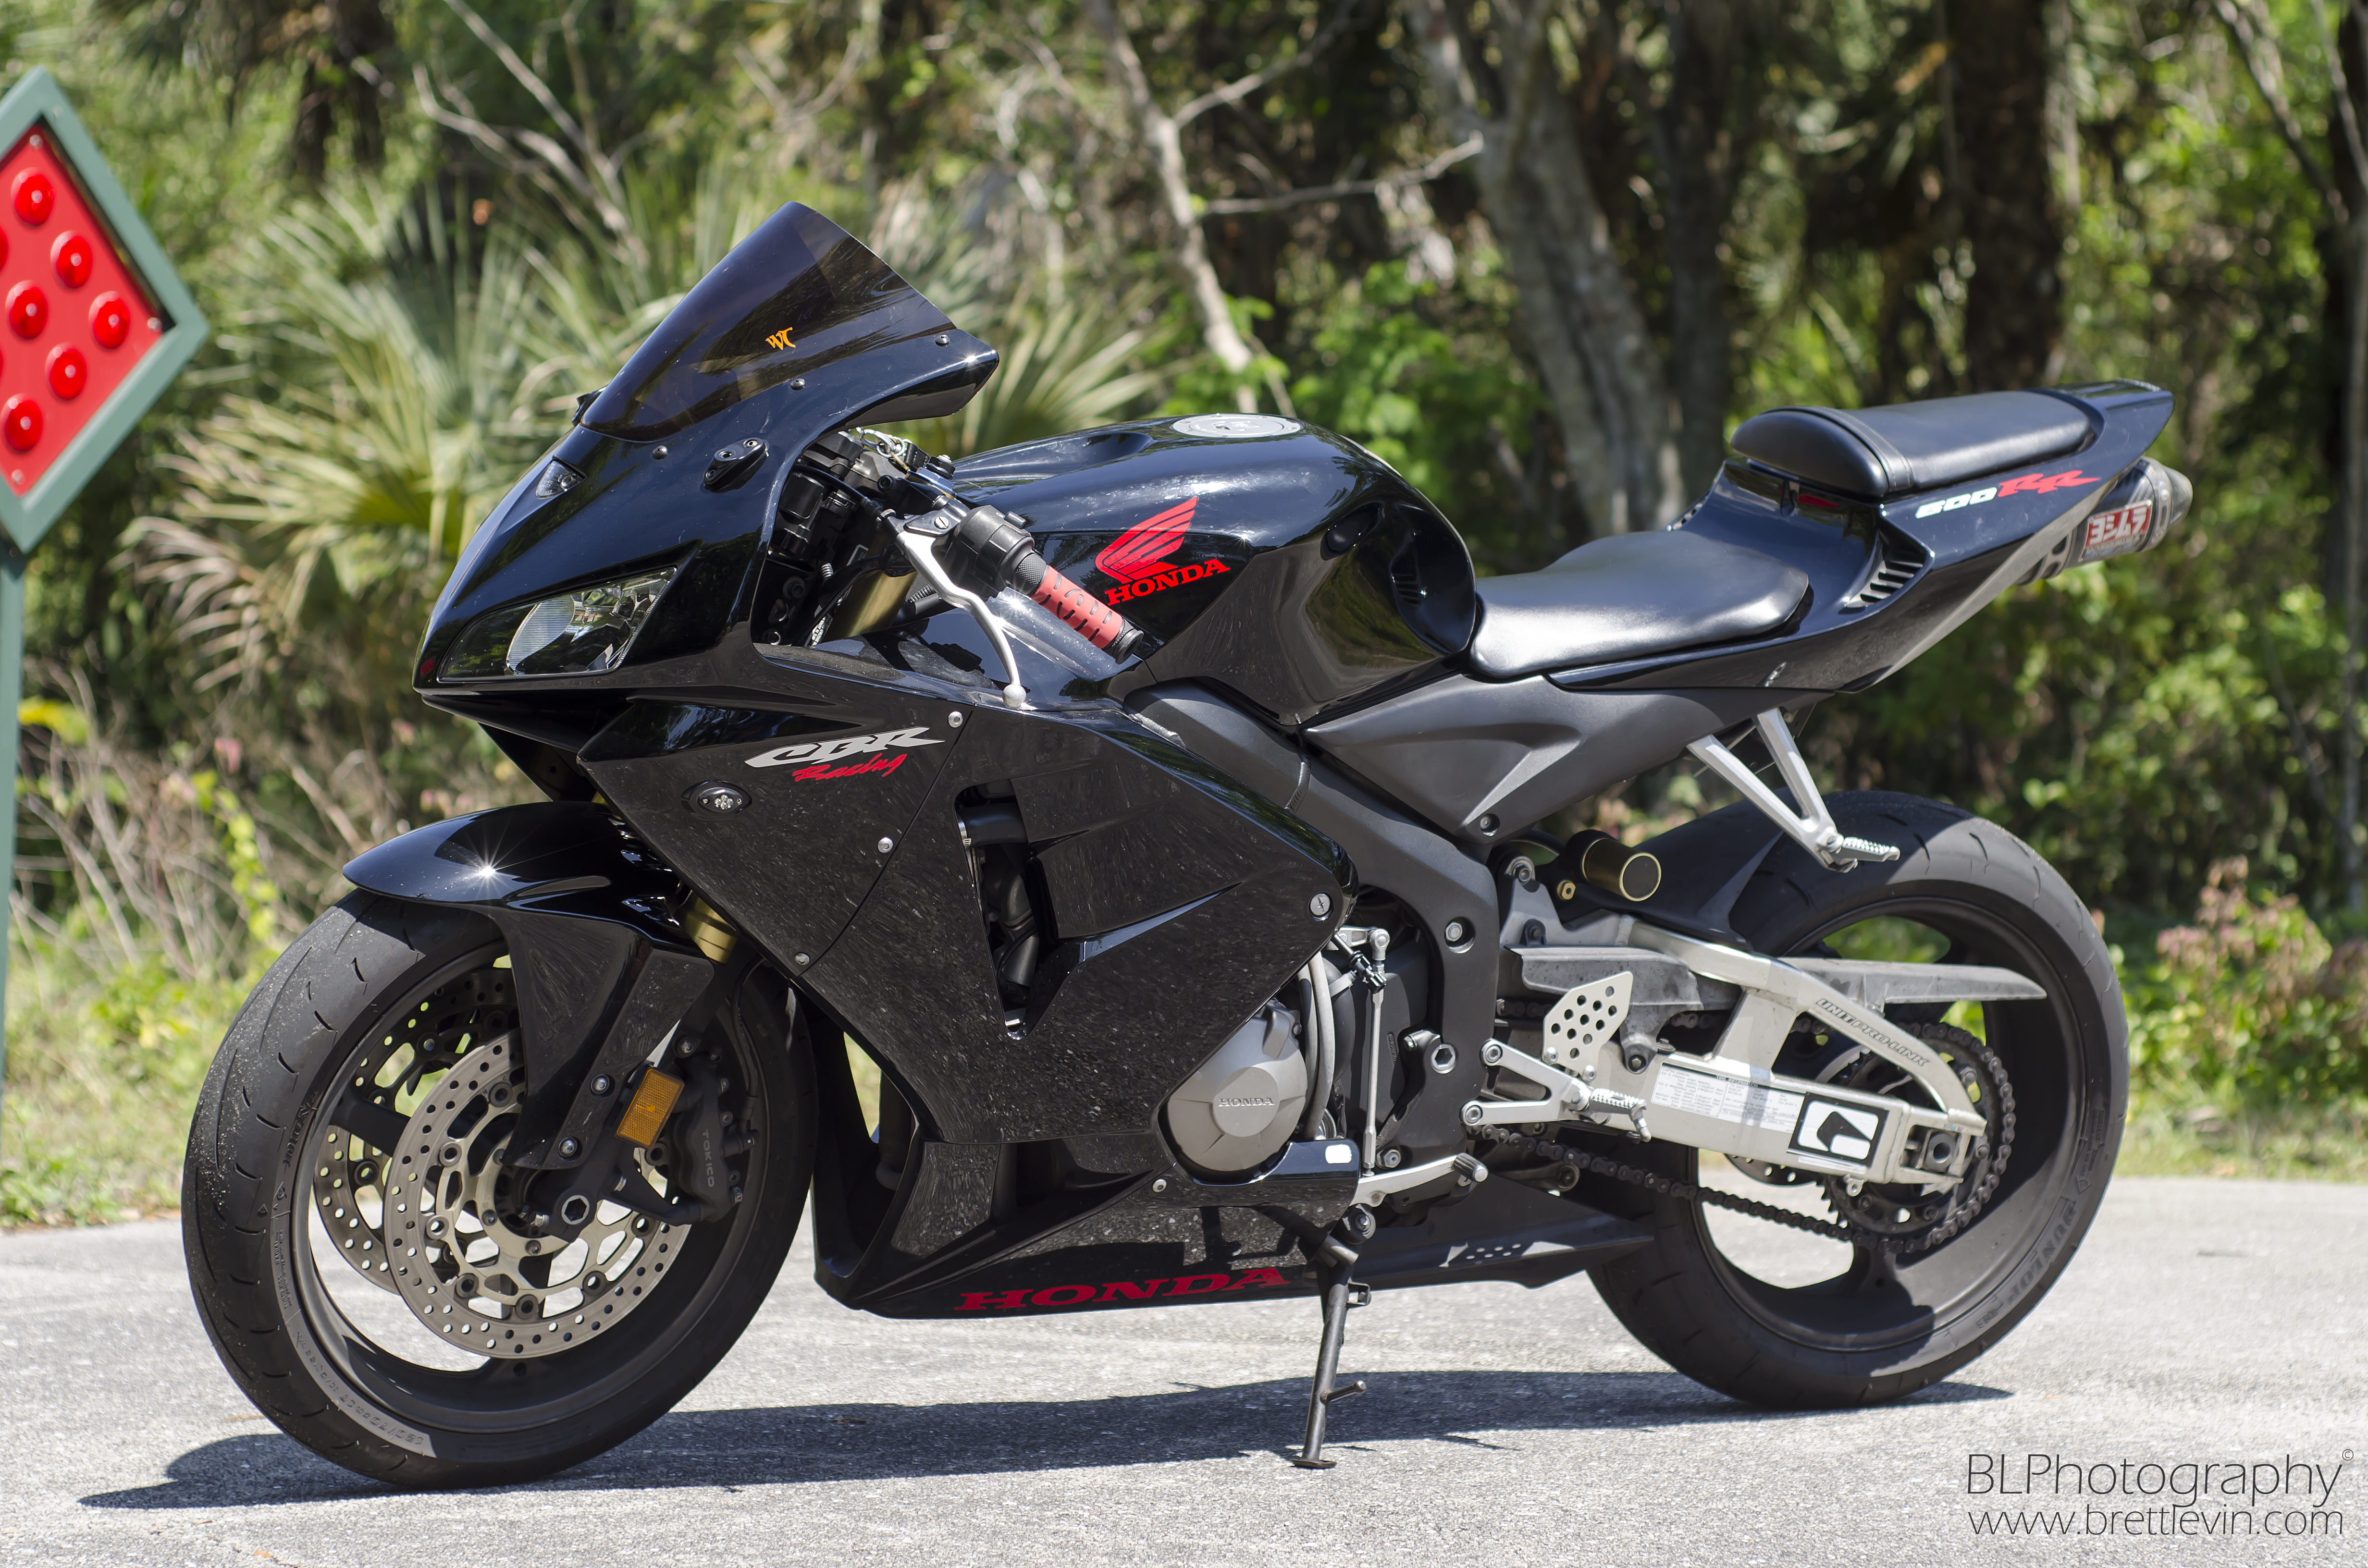 Технические характеристики мотоцикла Honda (Хонда) CBR600RR, ориентировочные цены и краткий обзор